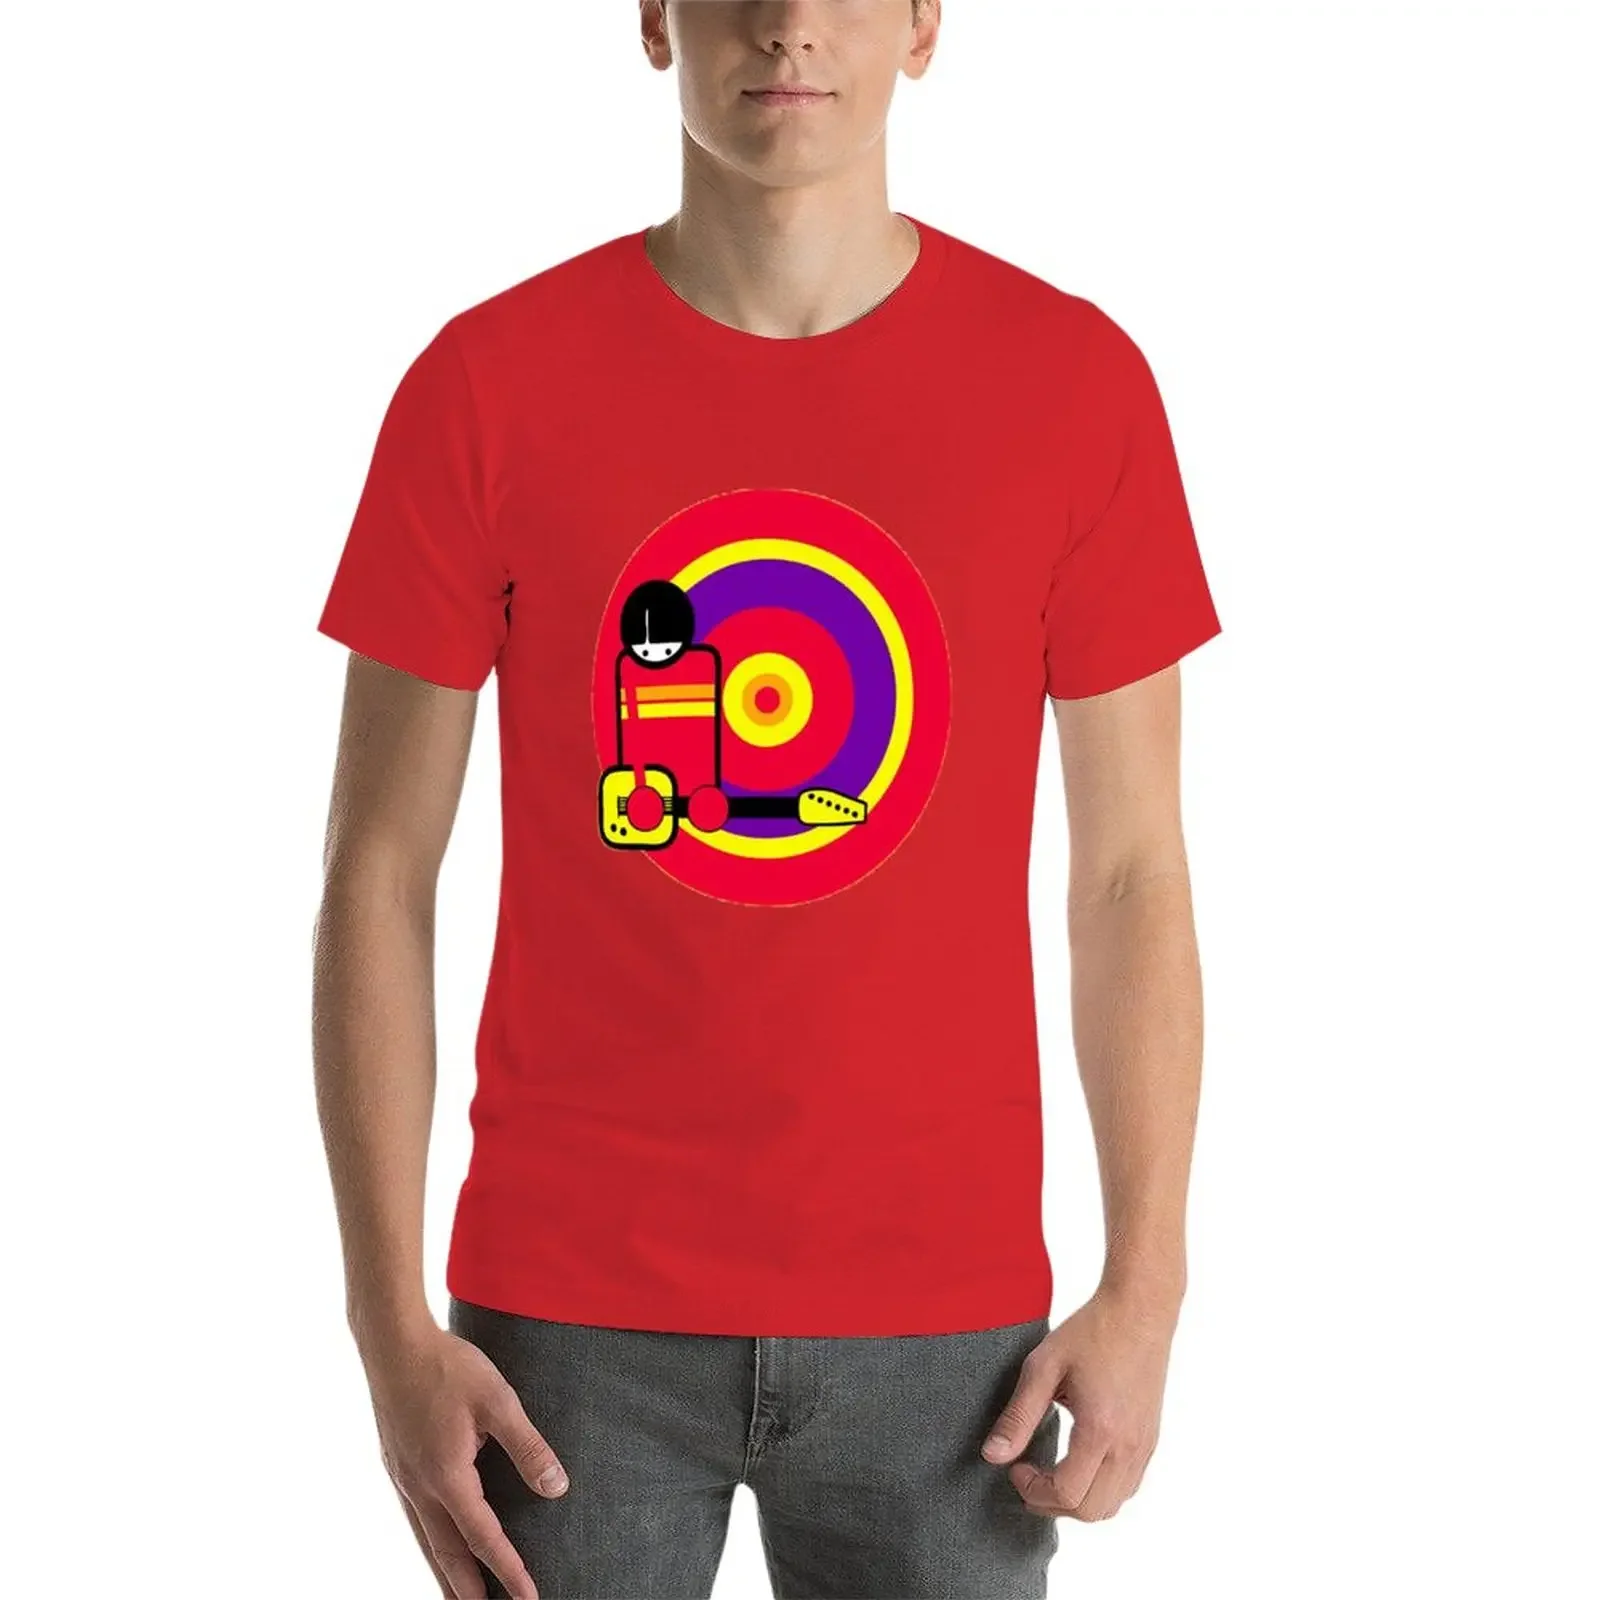 Camiseta Super 8 para hombre, ropa estética, diseño de aduanas, tus propias aduanas